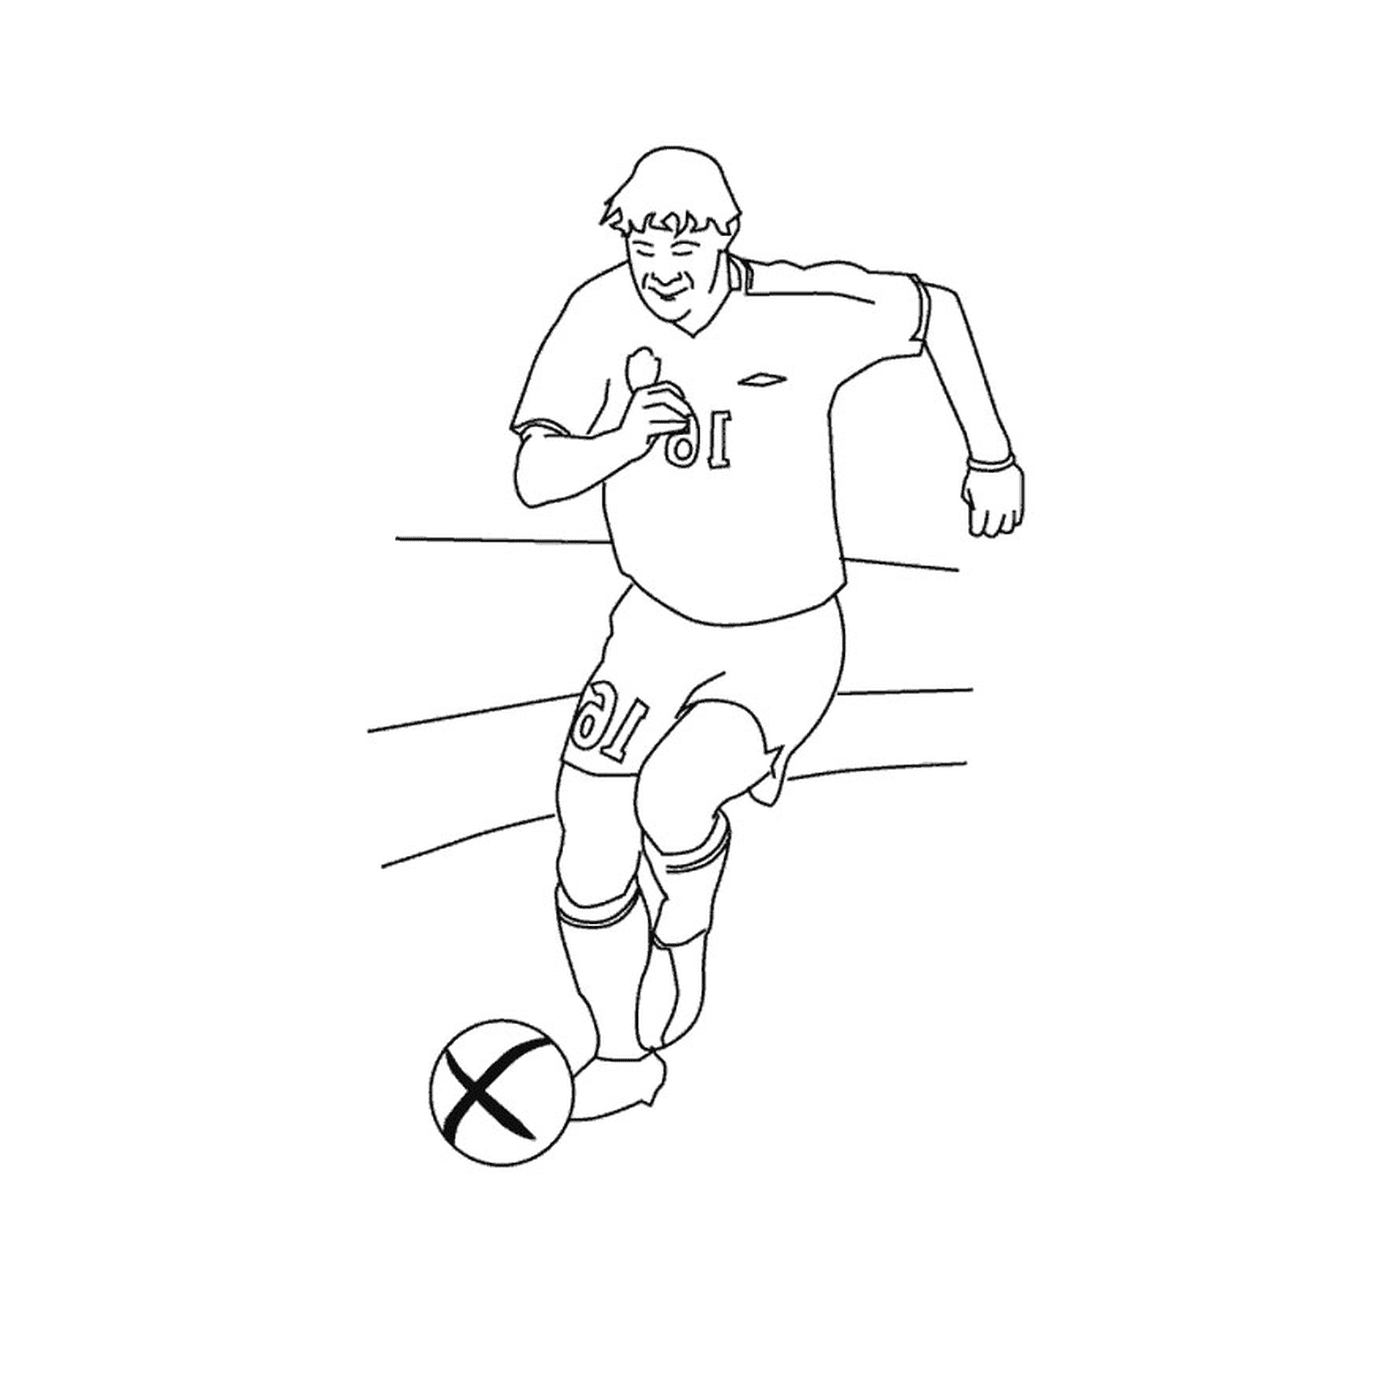  एक आदमी सेंट एटेन्नी में फुटबॉल खेलता है 